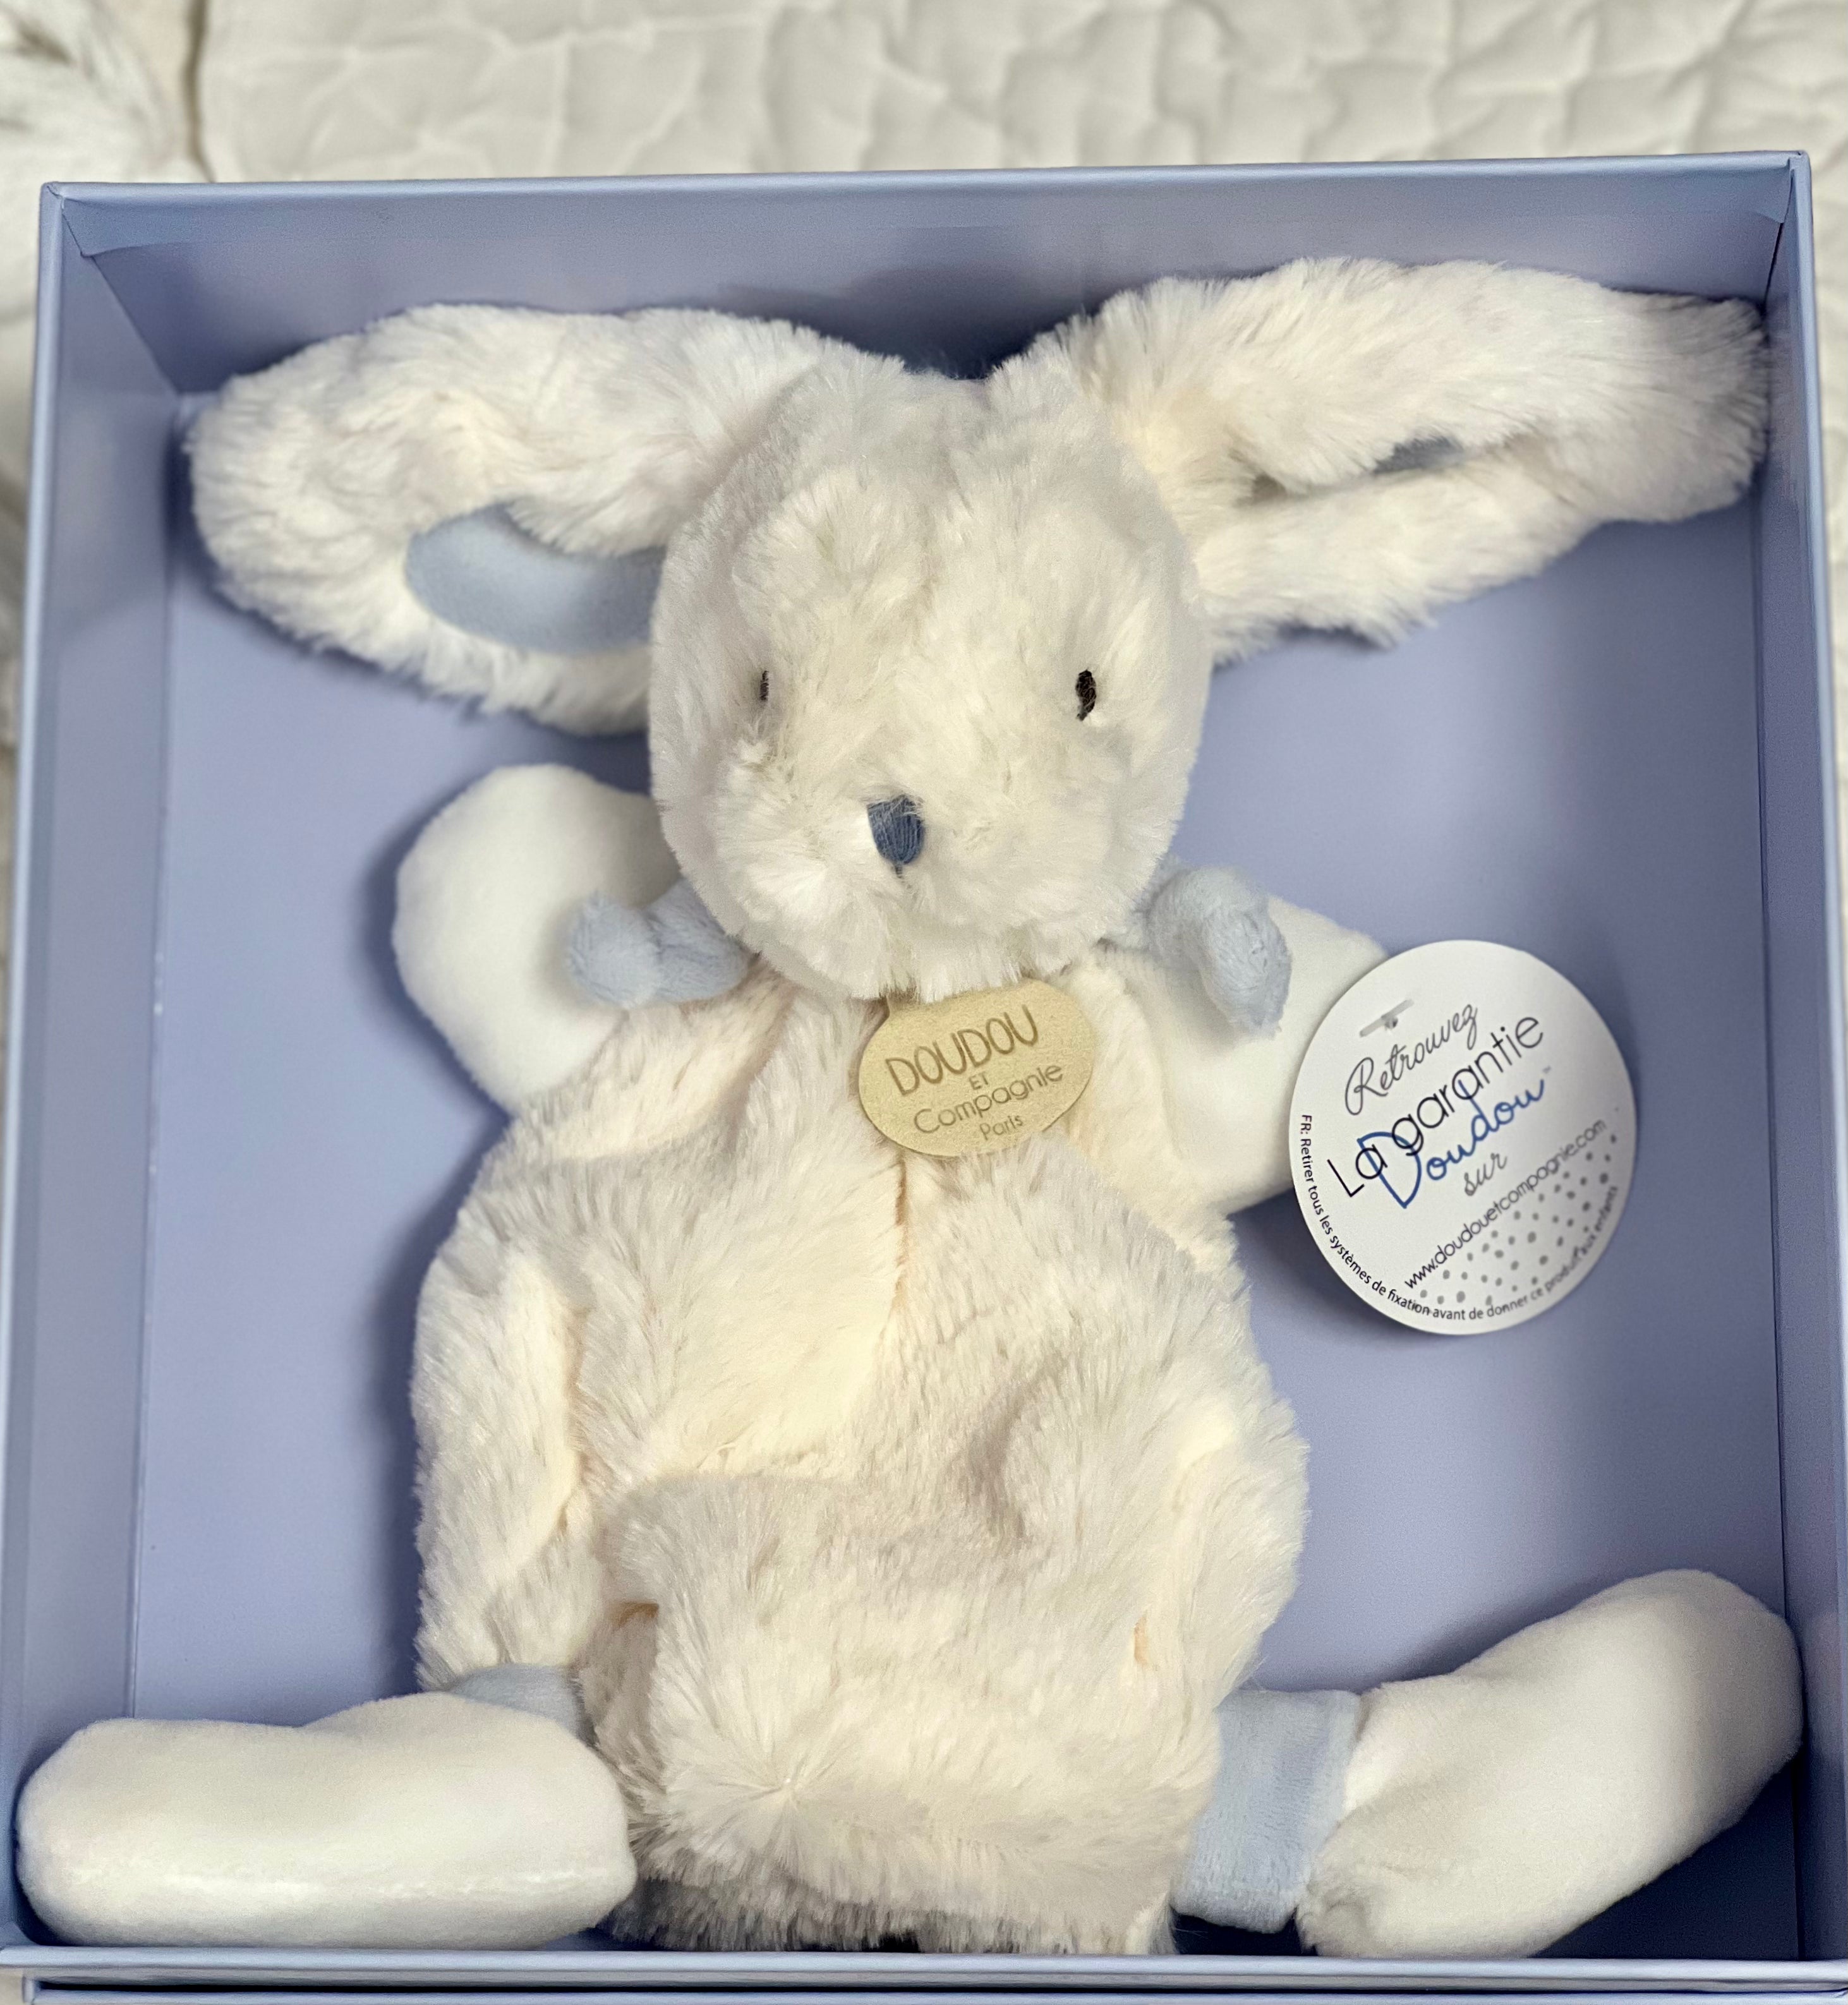 Doudou Et Compagnie - Bunny Stuffed Plush Animal with Pom Pom Tail